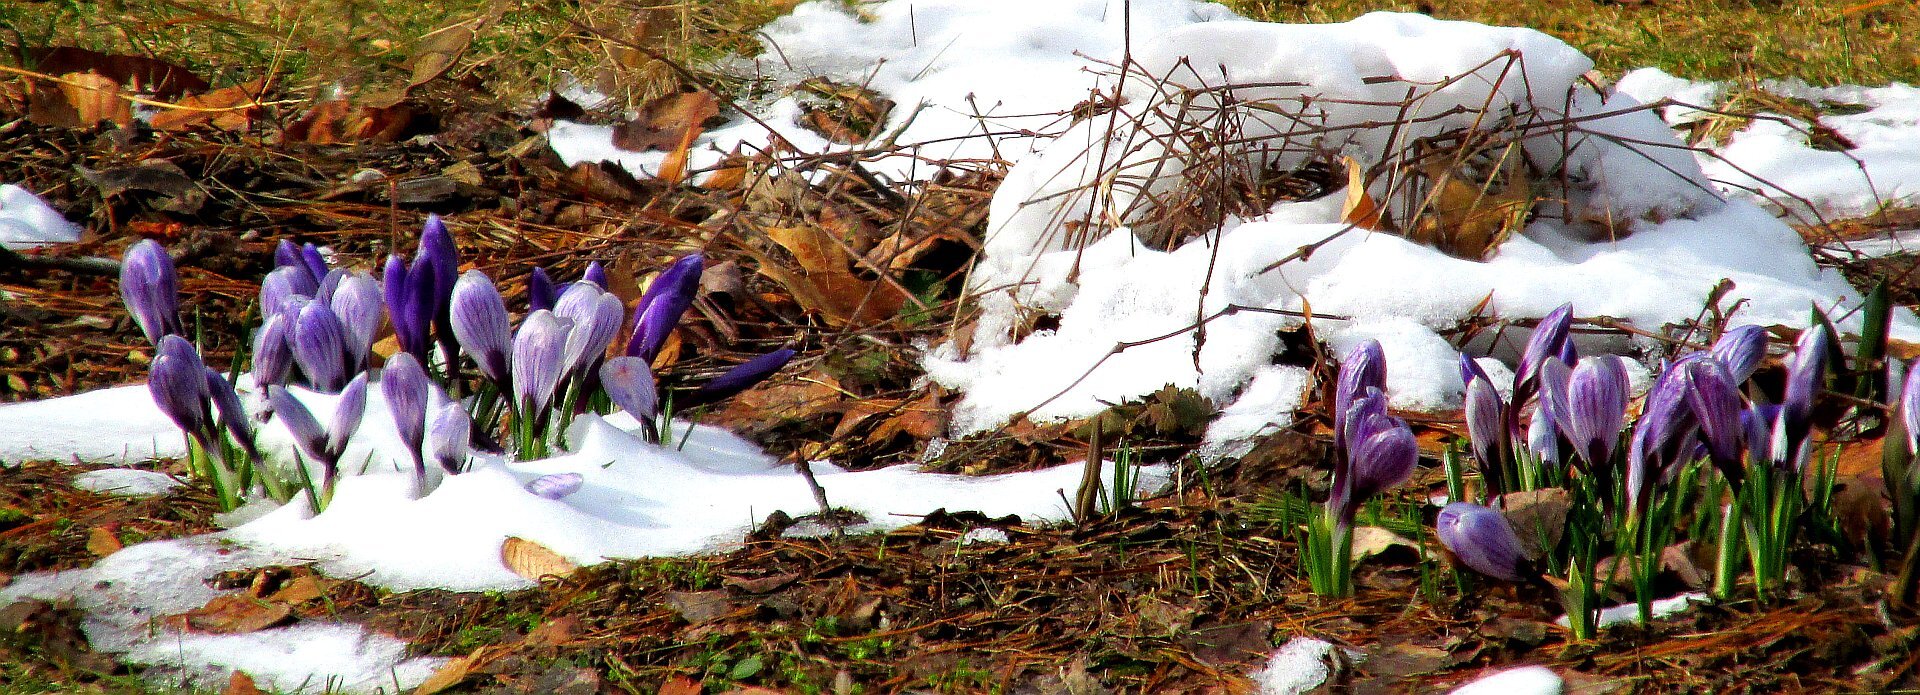 Panoramiczne zdjęcie przedstawia zbliżenie kawałka gleby w okresie wczesnowiosennym. Zieleniejąca trawa pokryta jest warstwą mokrych opadłych liści oraz sporymi ilościami śniegu. Po lewej i prawej stronie kadru znajdują się dwie grupy kwitnących na fioletowo krokusów. Kwiaty po prawej stronie do połowy przysypane są śniegiem.